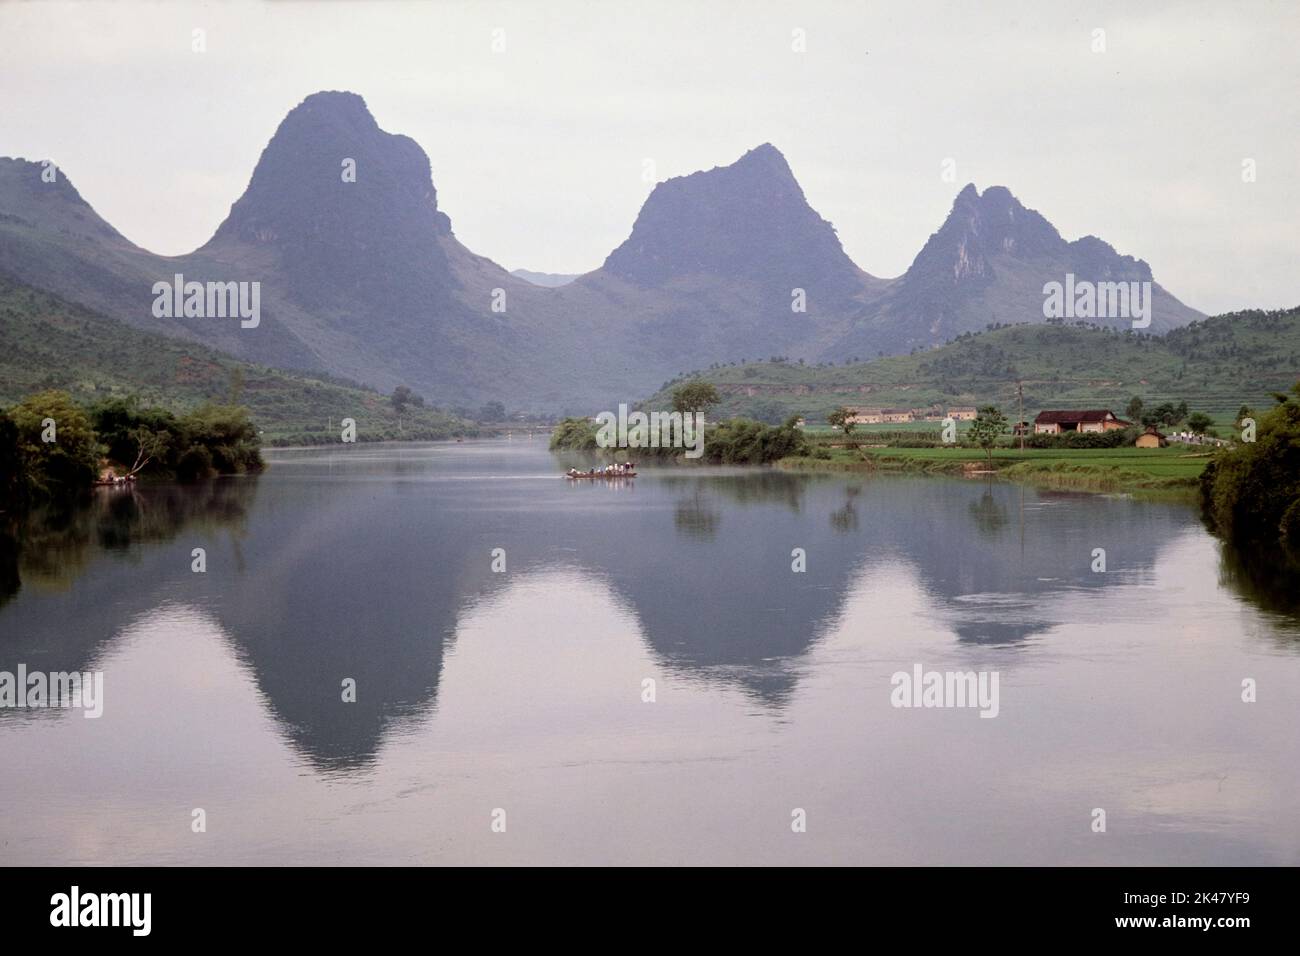 Vista horizontal de un paisaje kárstico, colinas y reflexiones a lo largo del río oeste, cerca de Shaoguan, provincia de Guangdong, China Junio 1988 Foto de stock